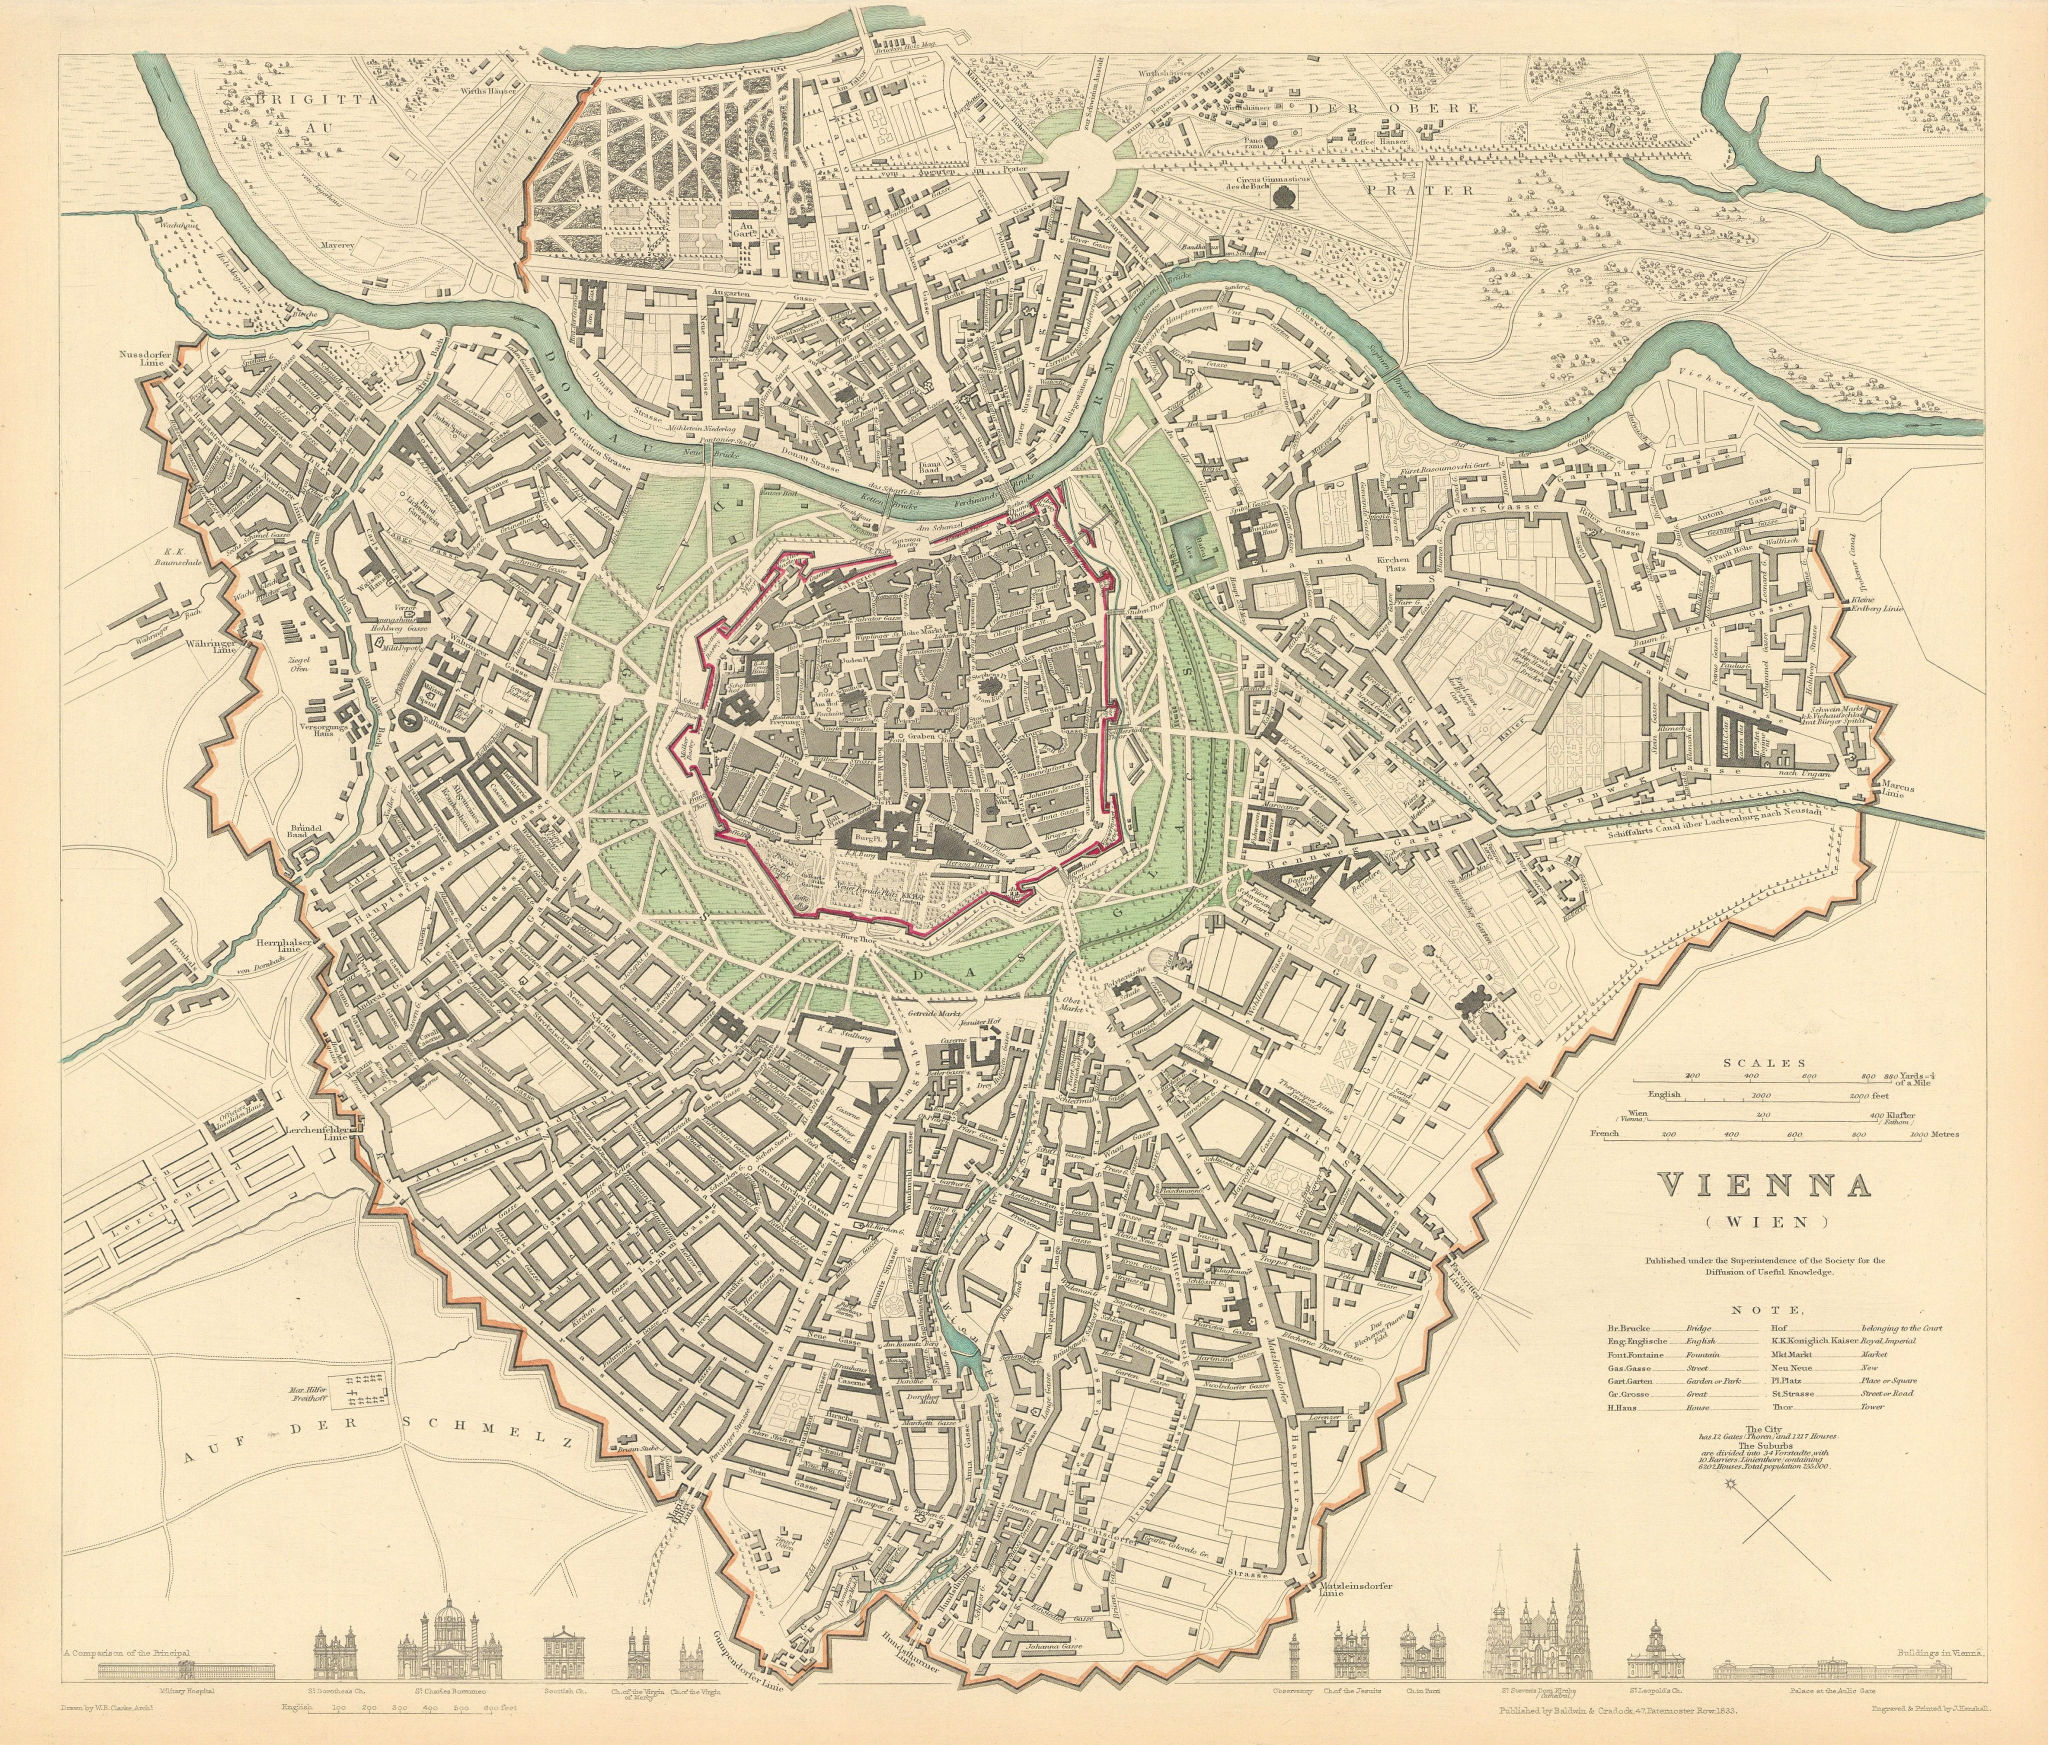 VIENNA WIEN. Antique town city map plan. Principal building profiles. SDUK 1844